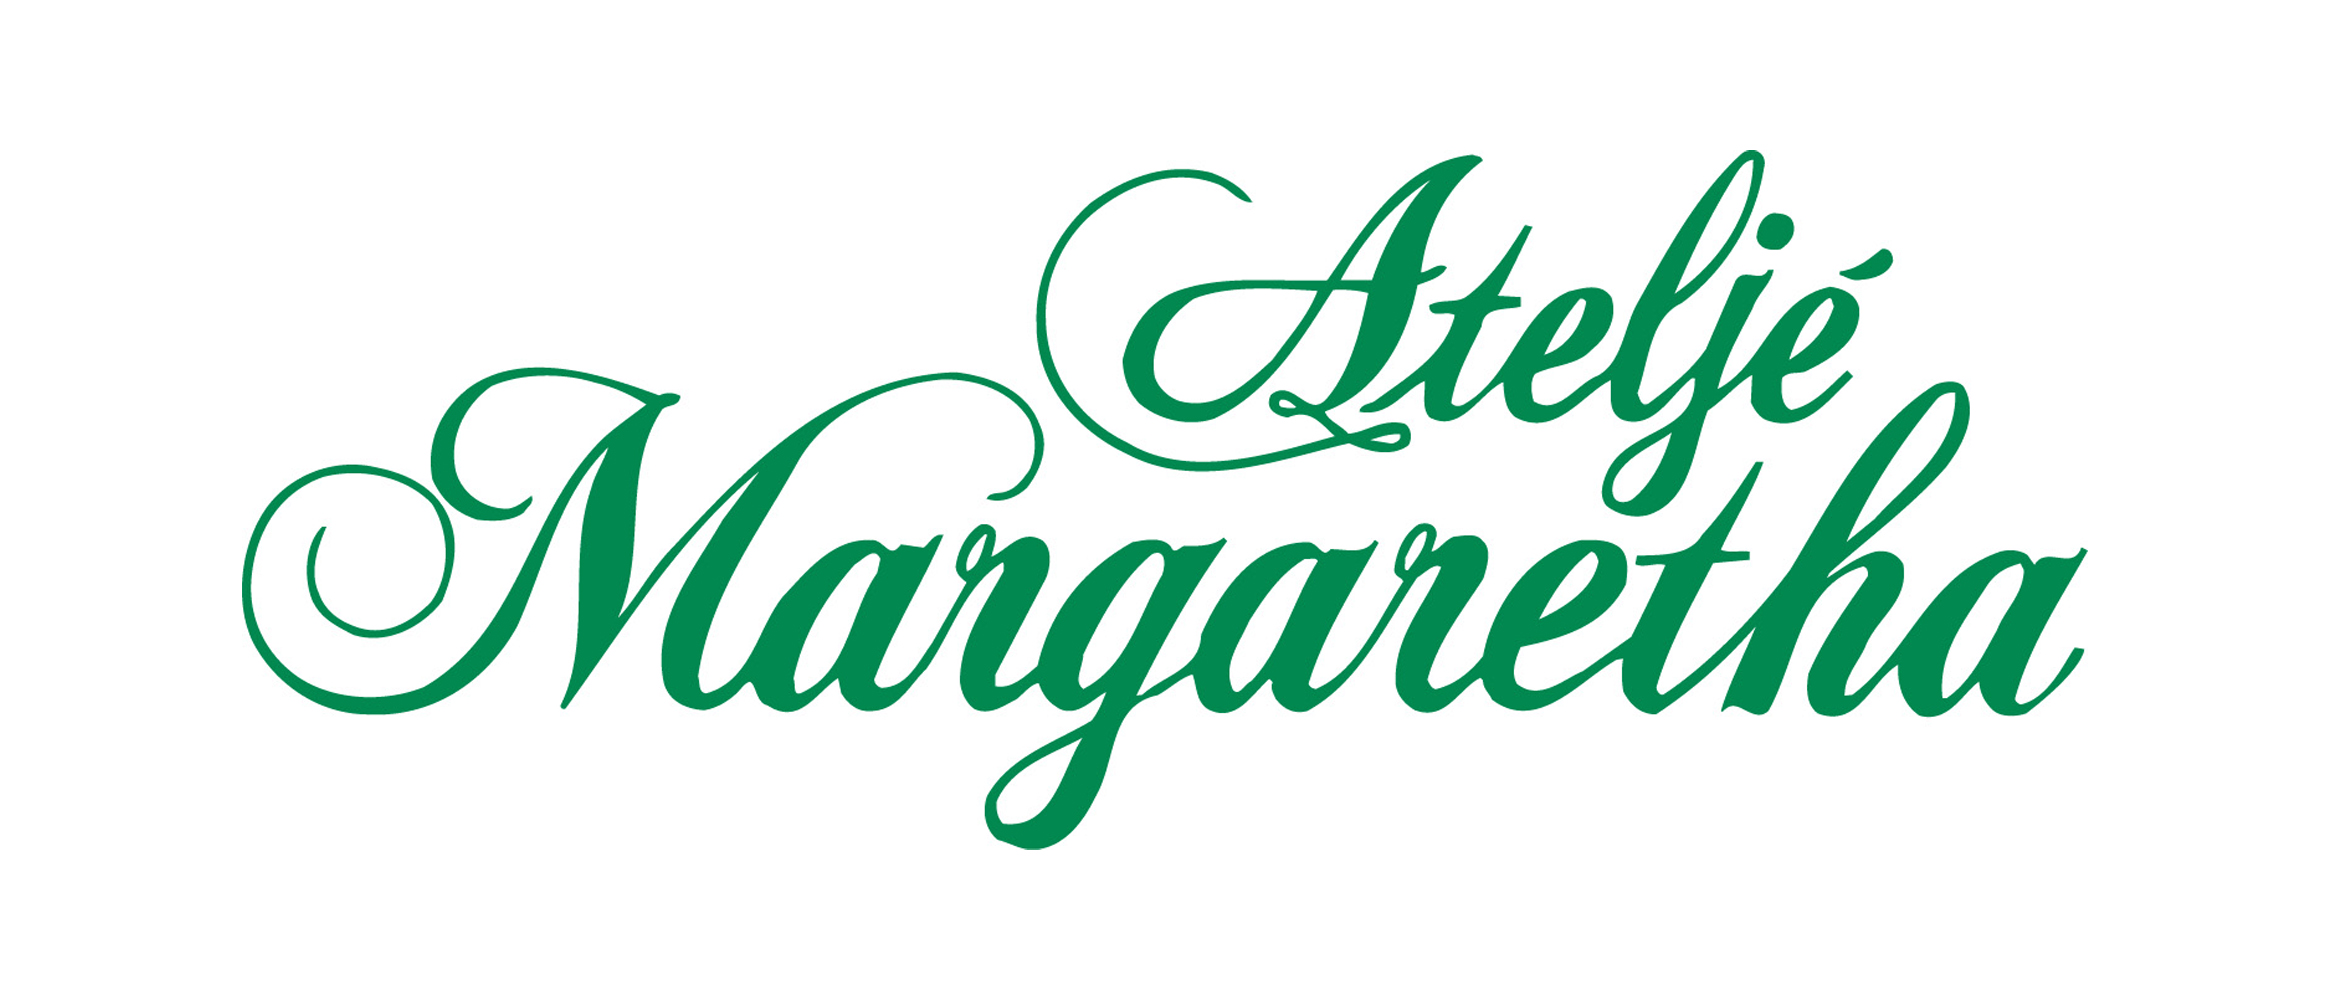 Margaretha.fi